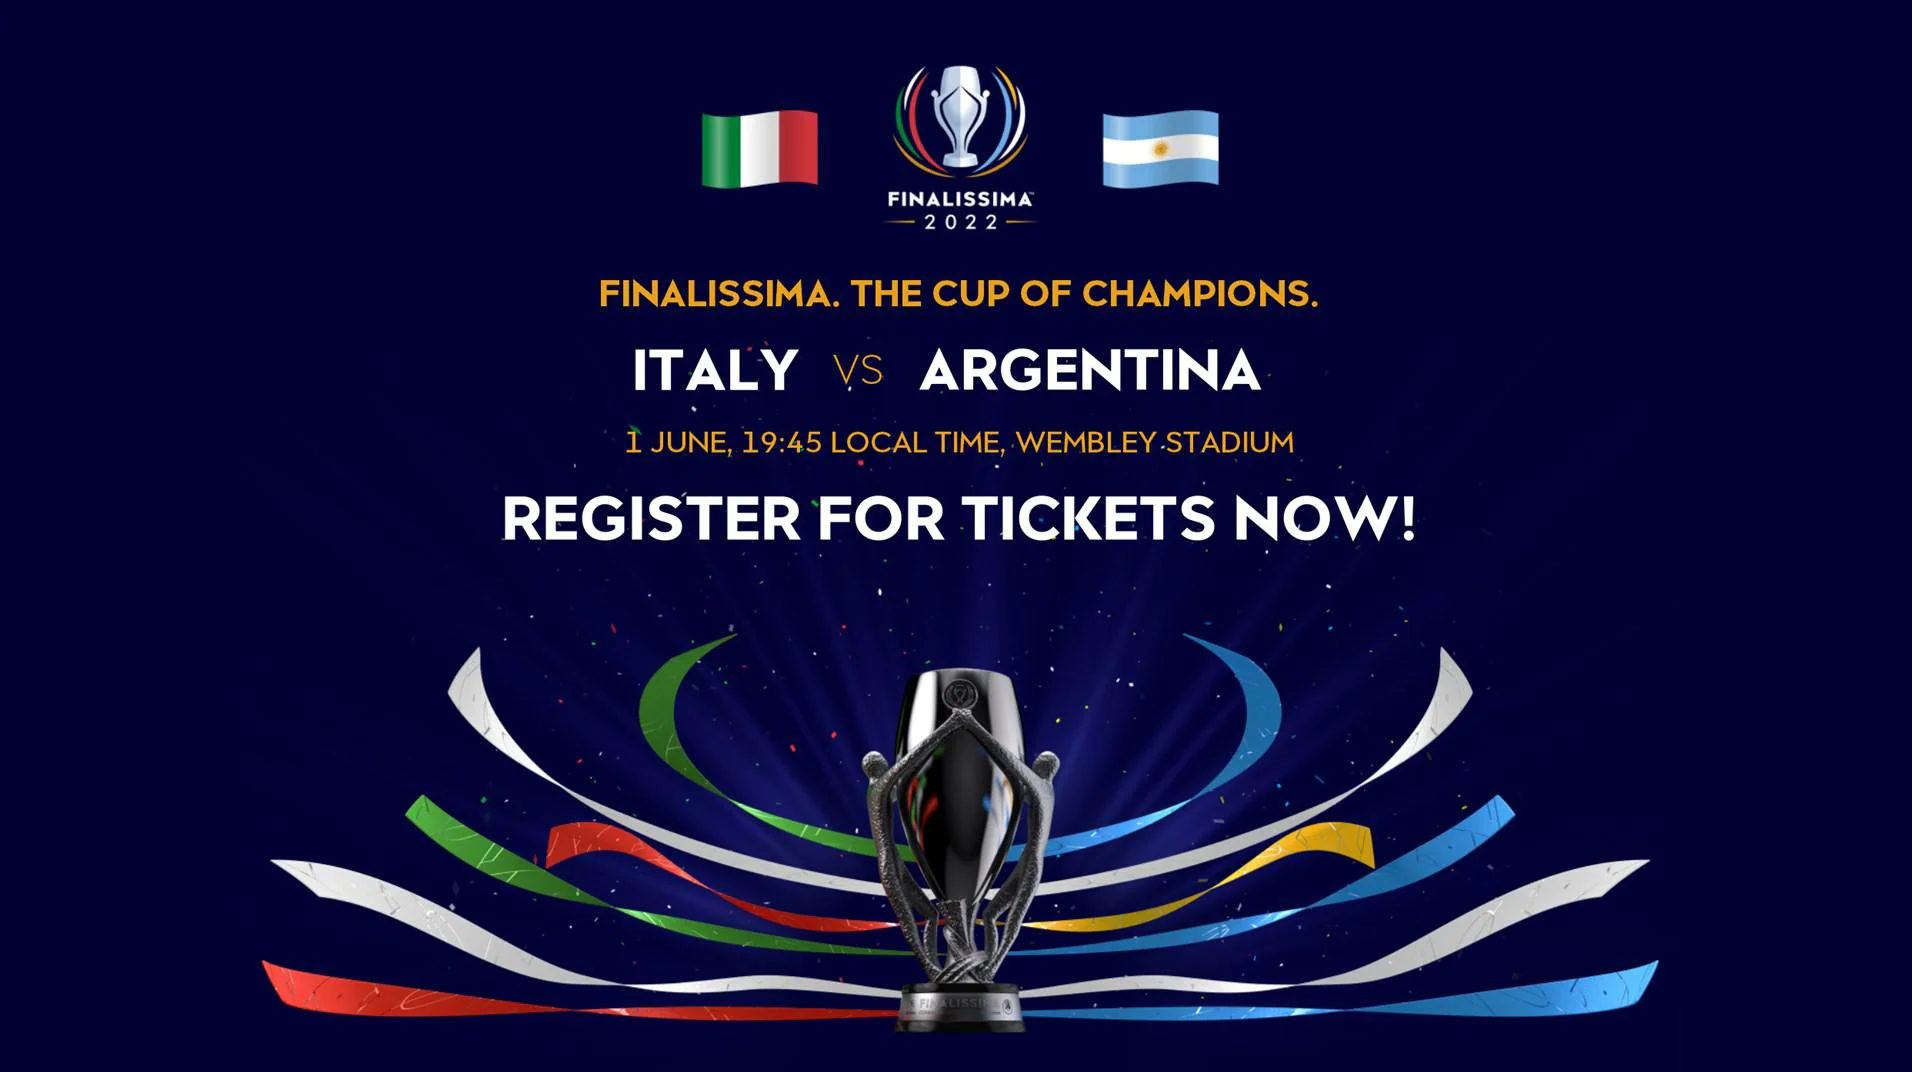 La finale tra Argentina e Italia ha già luogo e data fissata